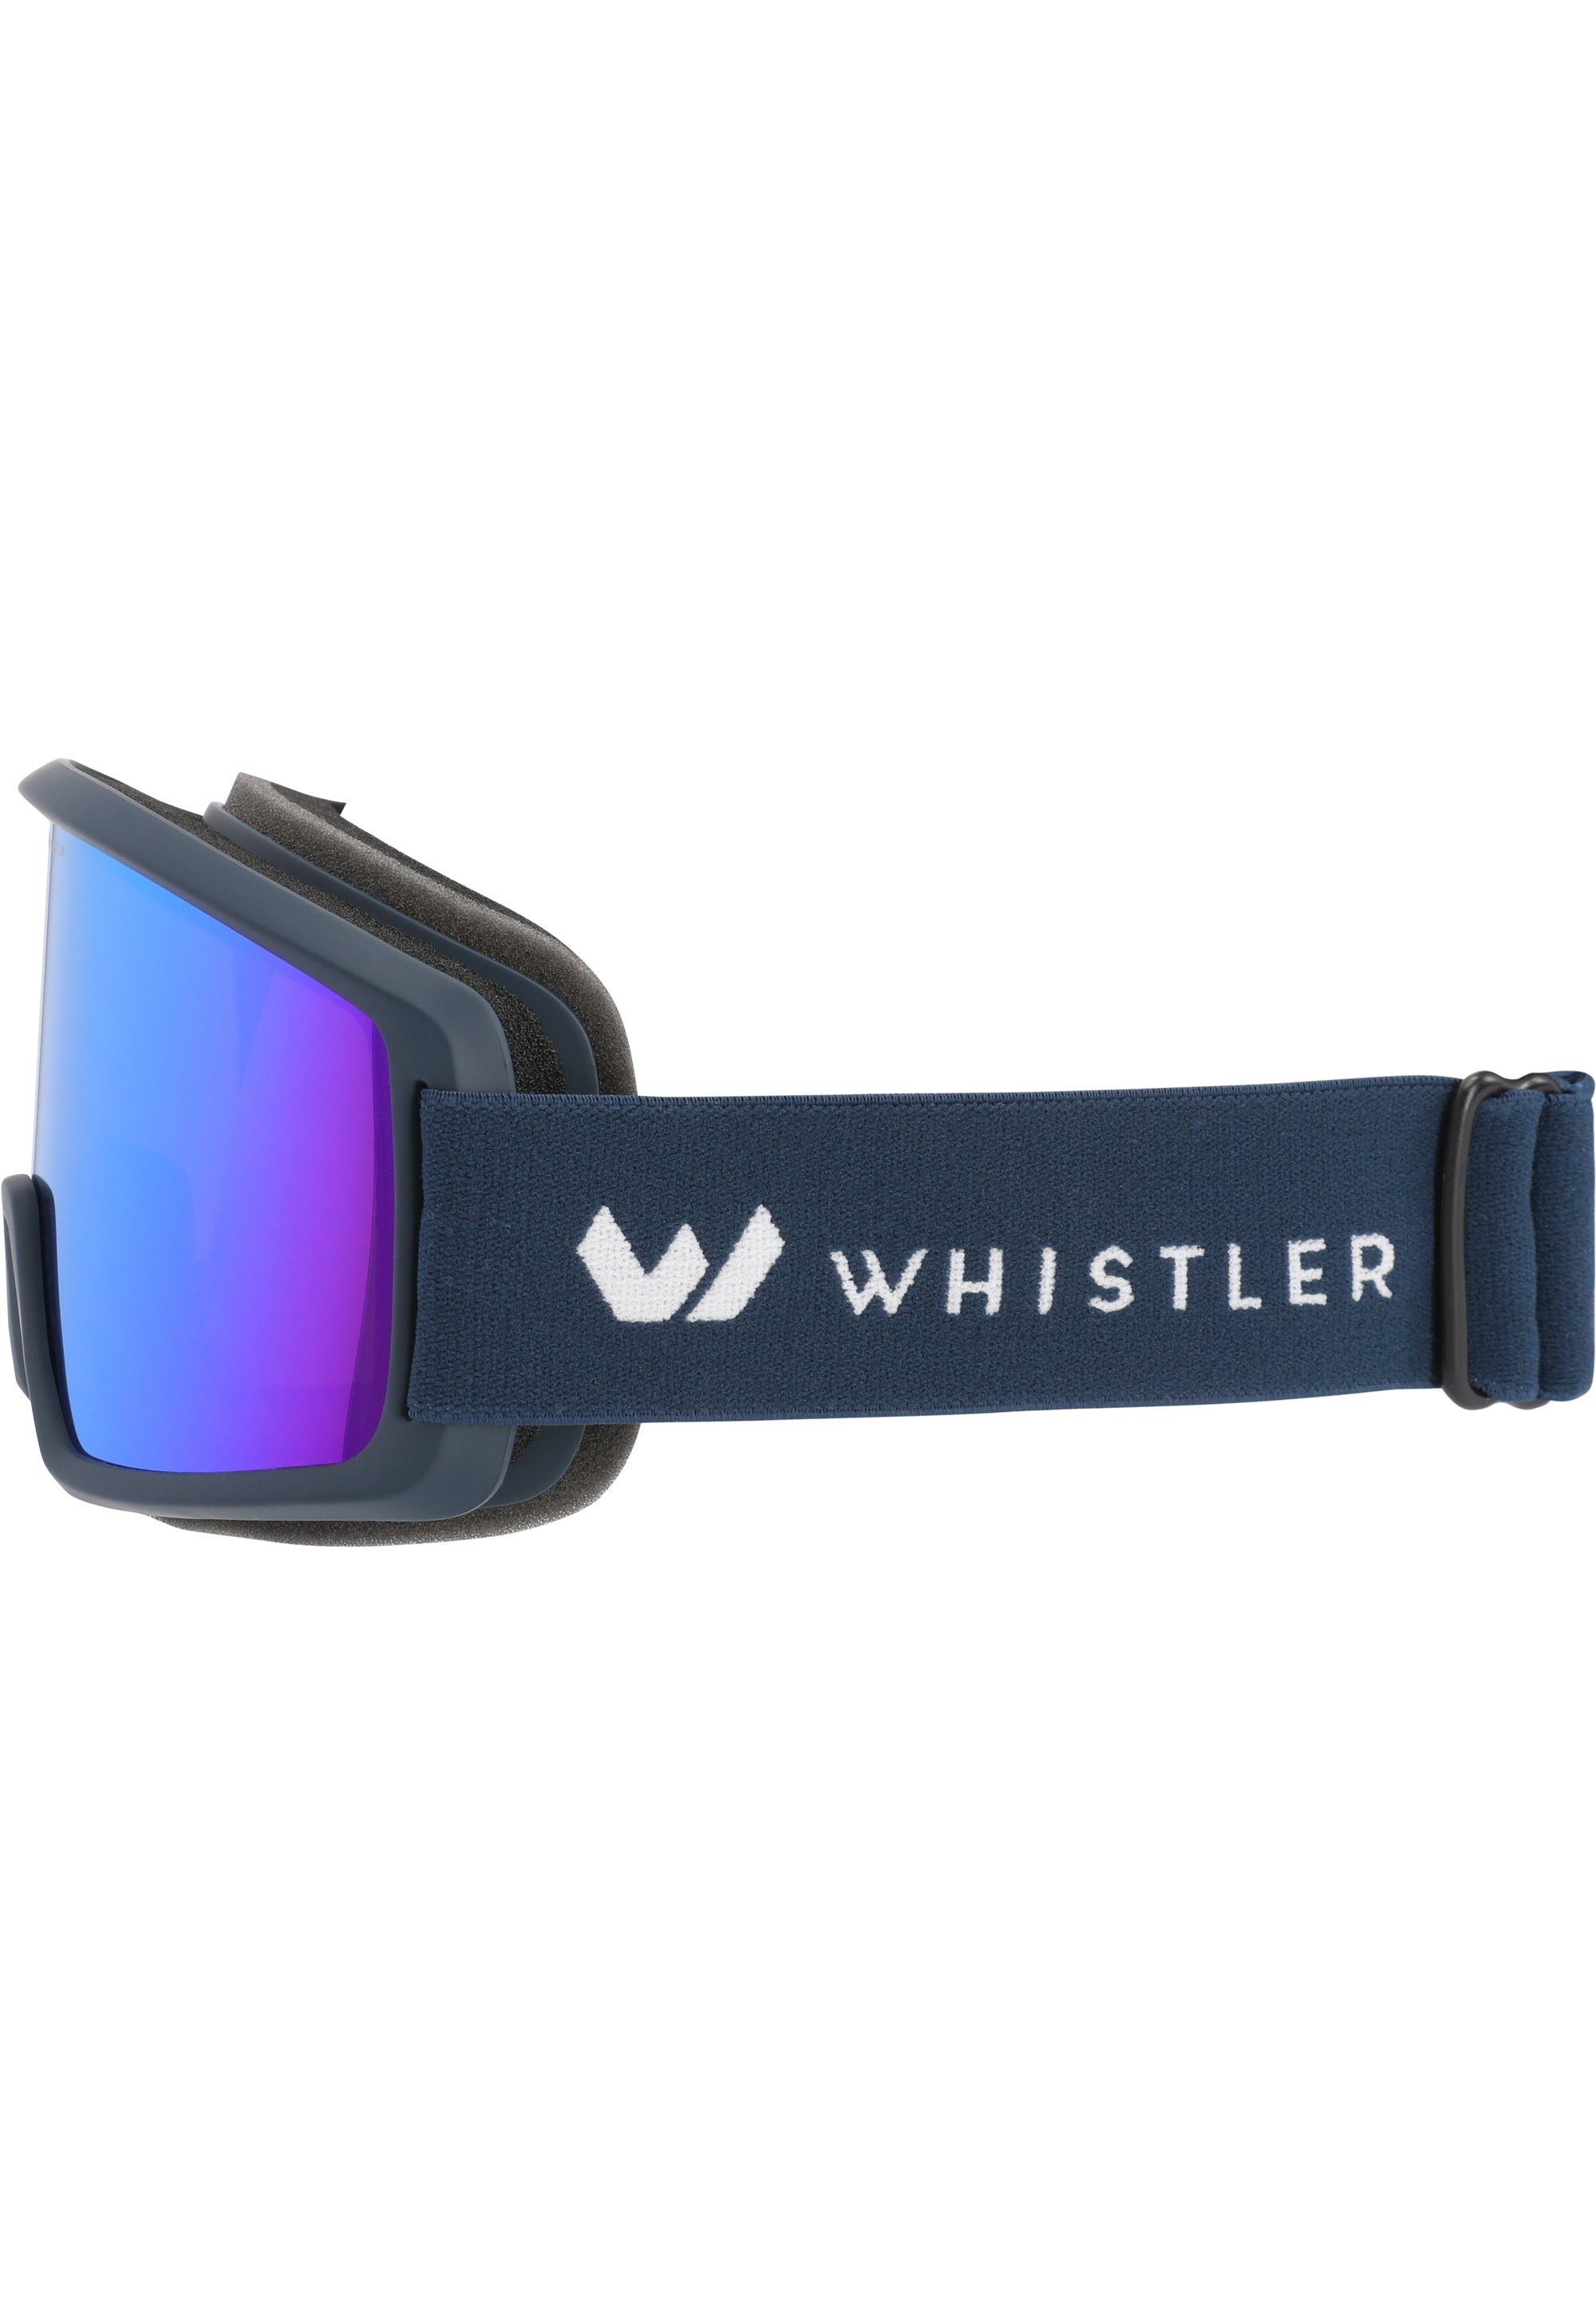 WHISTLER Skibrille Anti Fog-Funktion und UV-Schutz petrol WS5100, mit